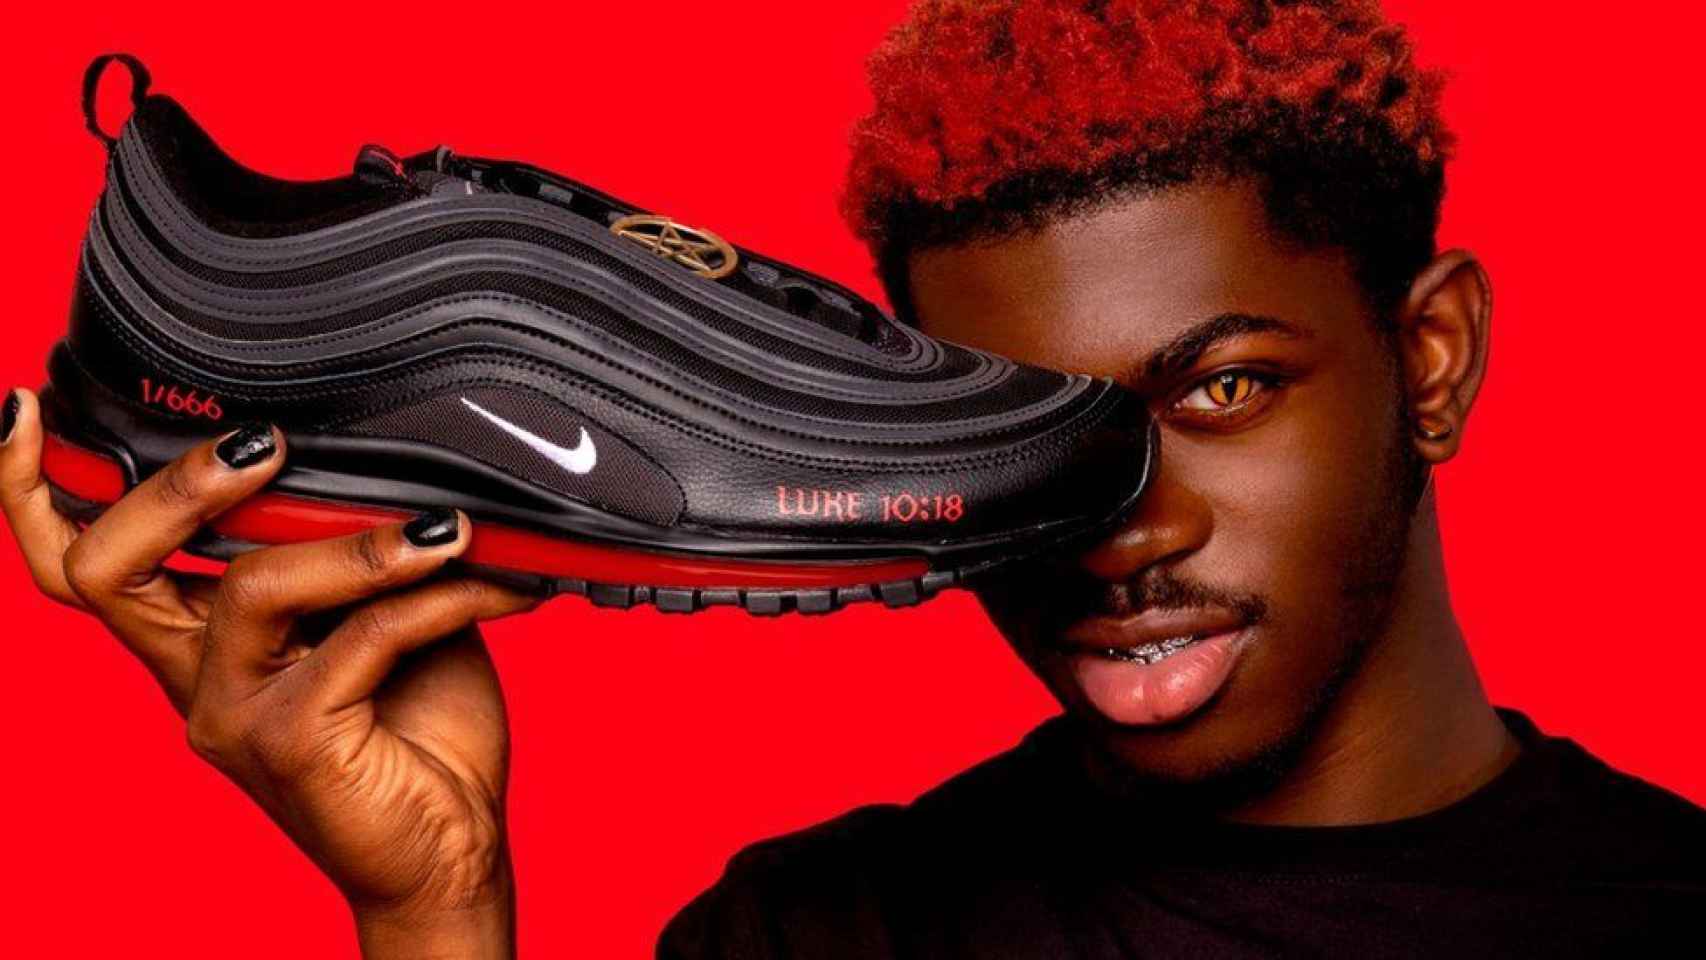 Presidente Nueva llegada Solitario Las Nike satánicas con sangre humana, a 1.018 $: creadas por el rapero Lil  Nas X sin ningún permiso